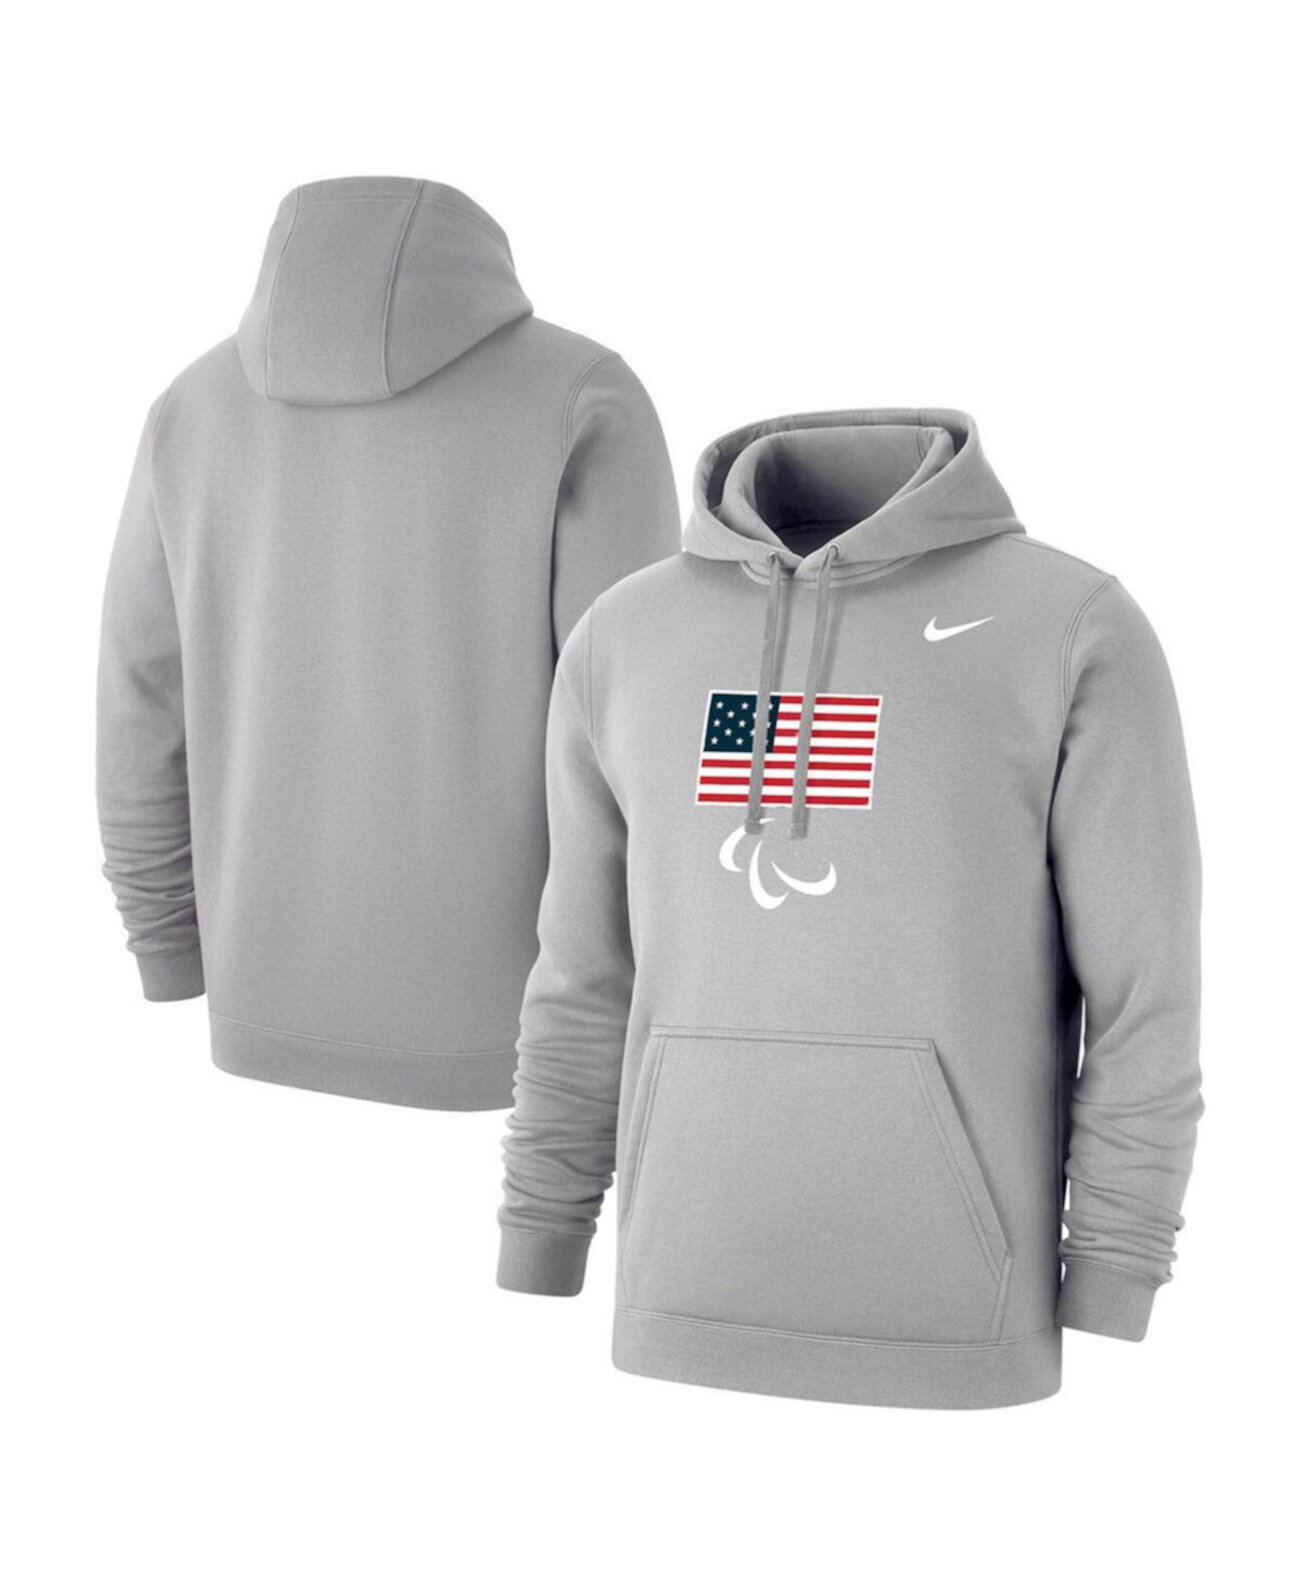 Мужской флисовый пуловер с капюшоном темно-серого цвета сборной США Паралимпийских игр Nike